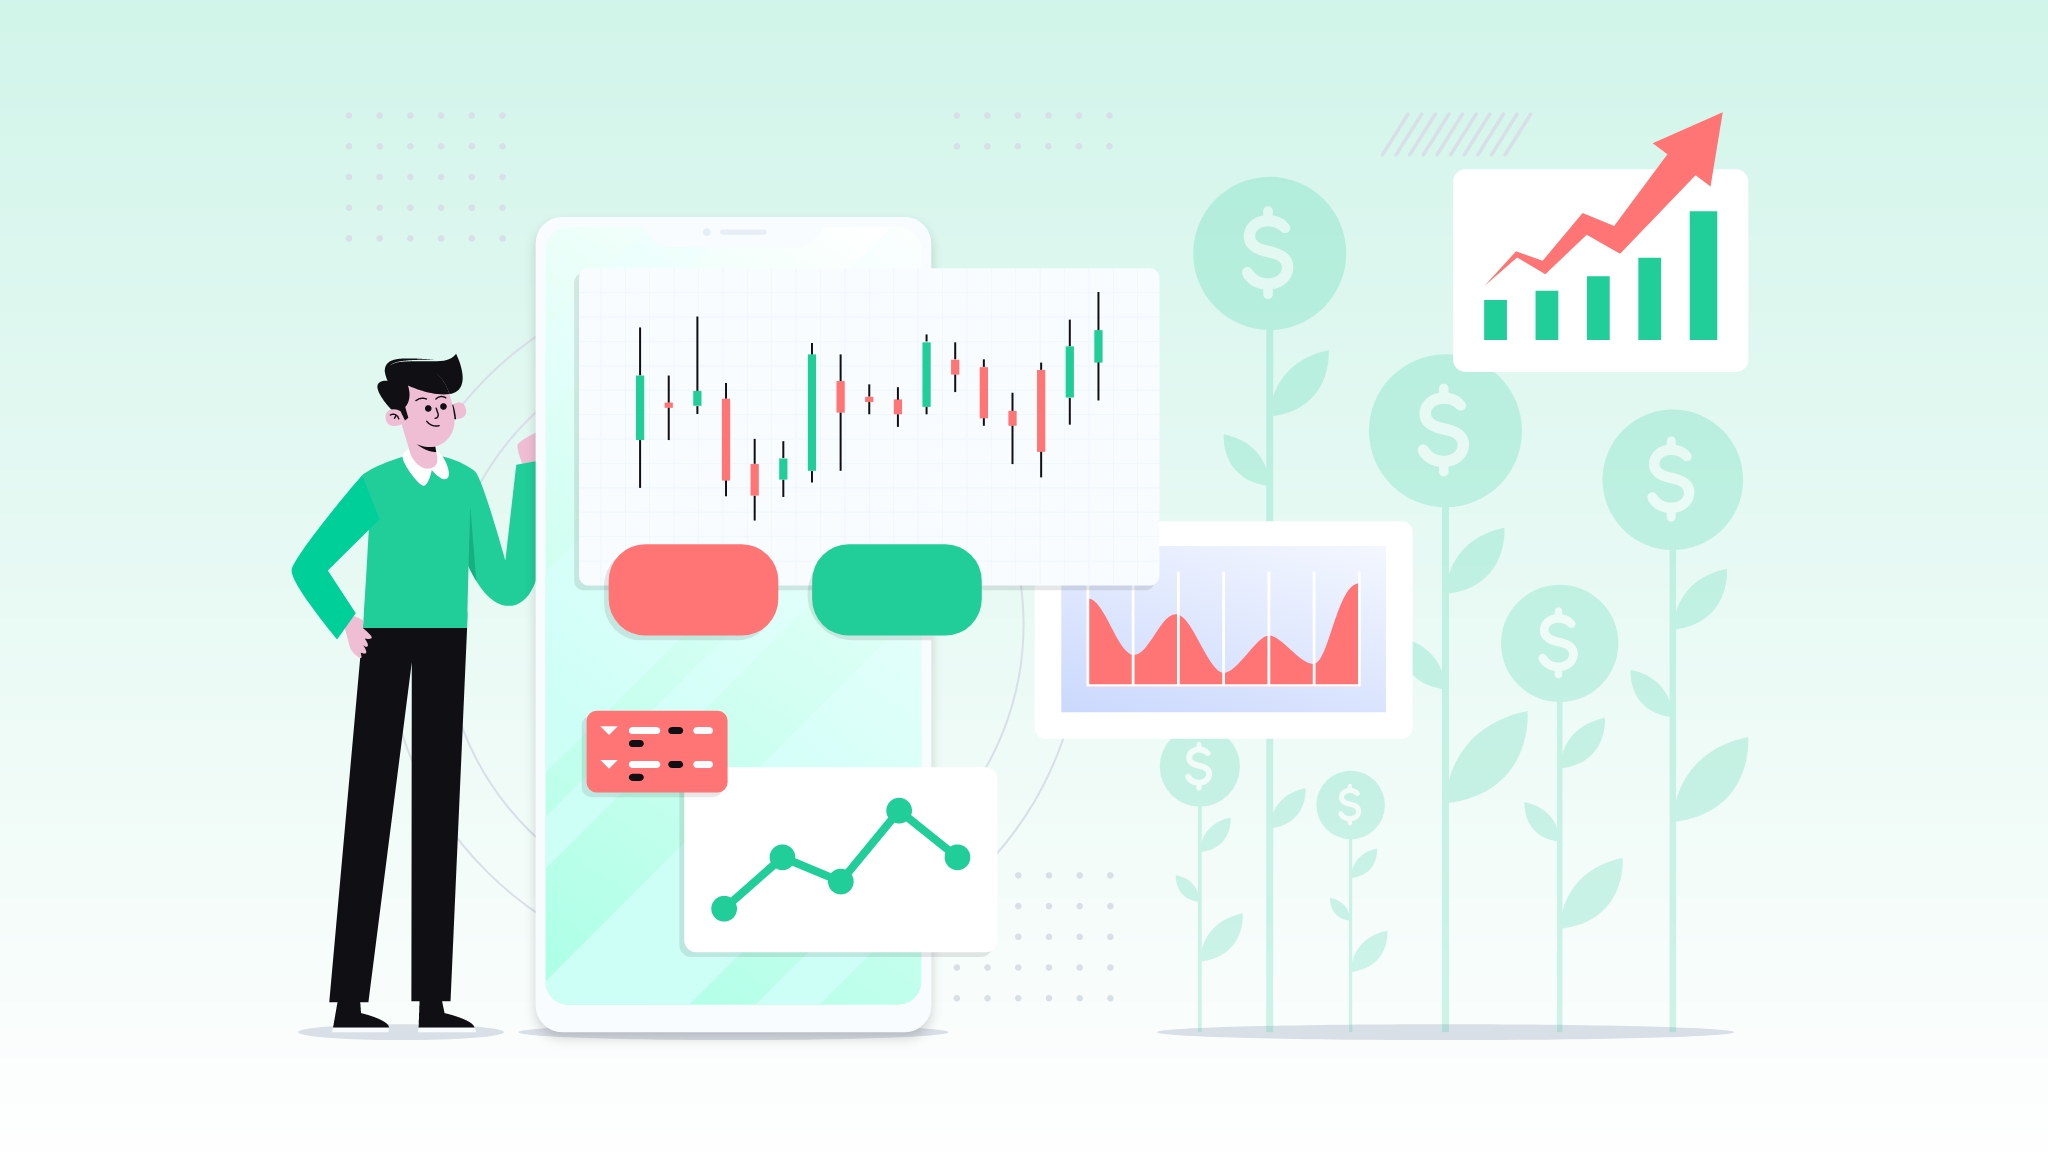 Robinhood Stock Trading App Business Model Revealed